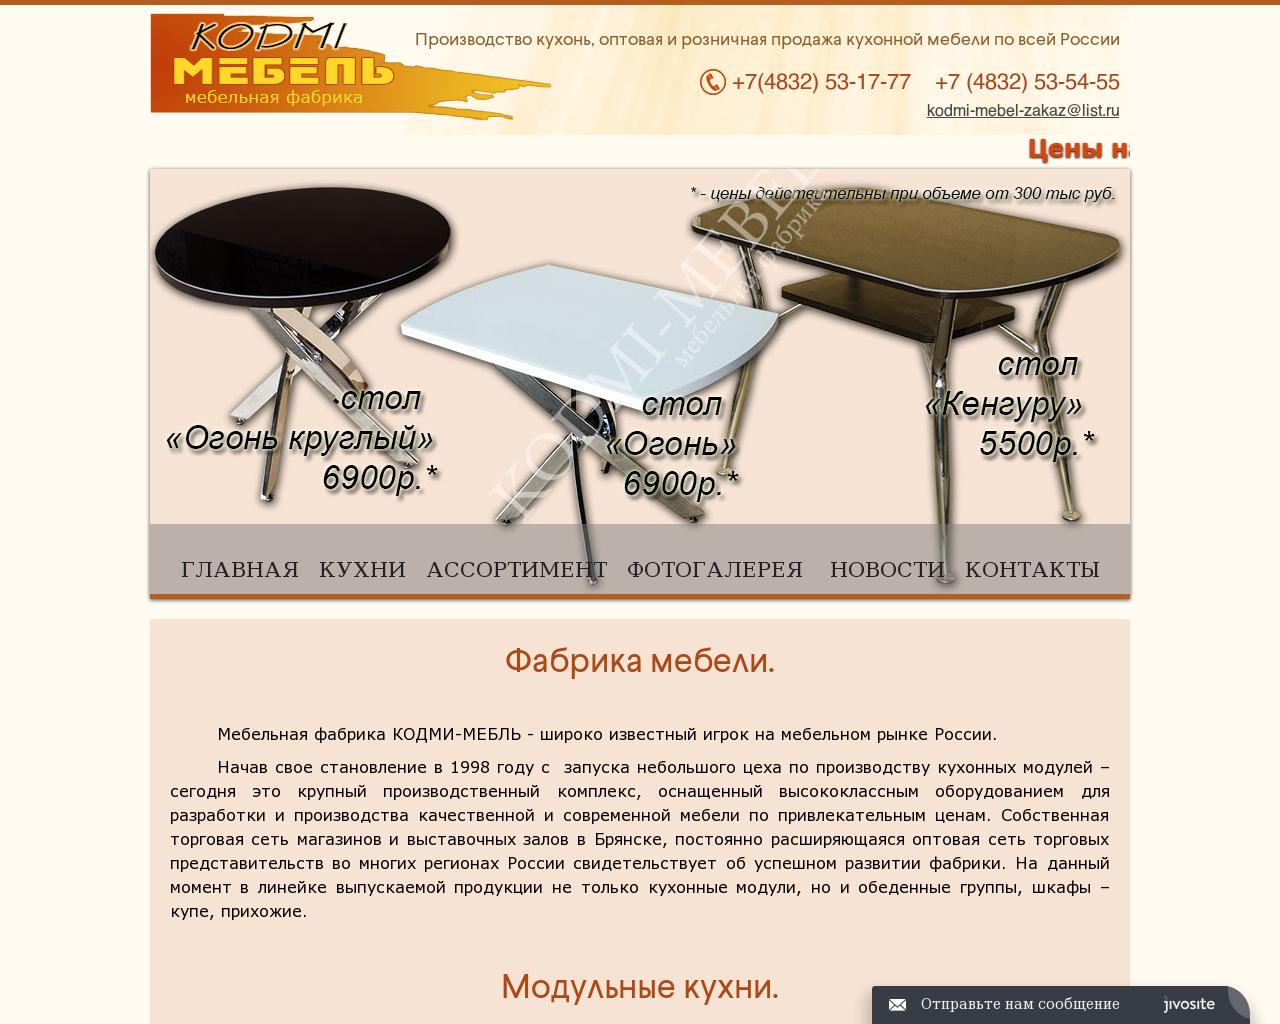 Изображение сайта kodmi-mebel.ru в разрешении 1280x1024